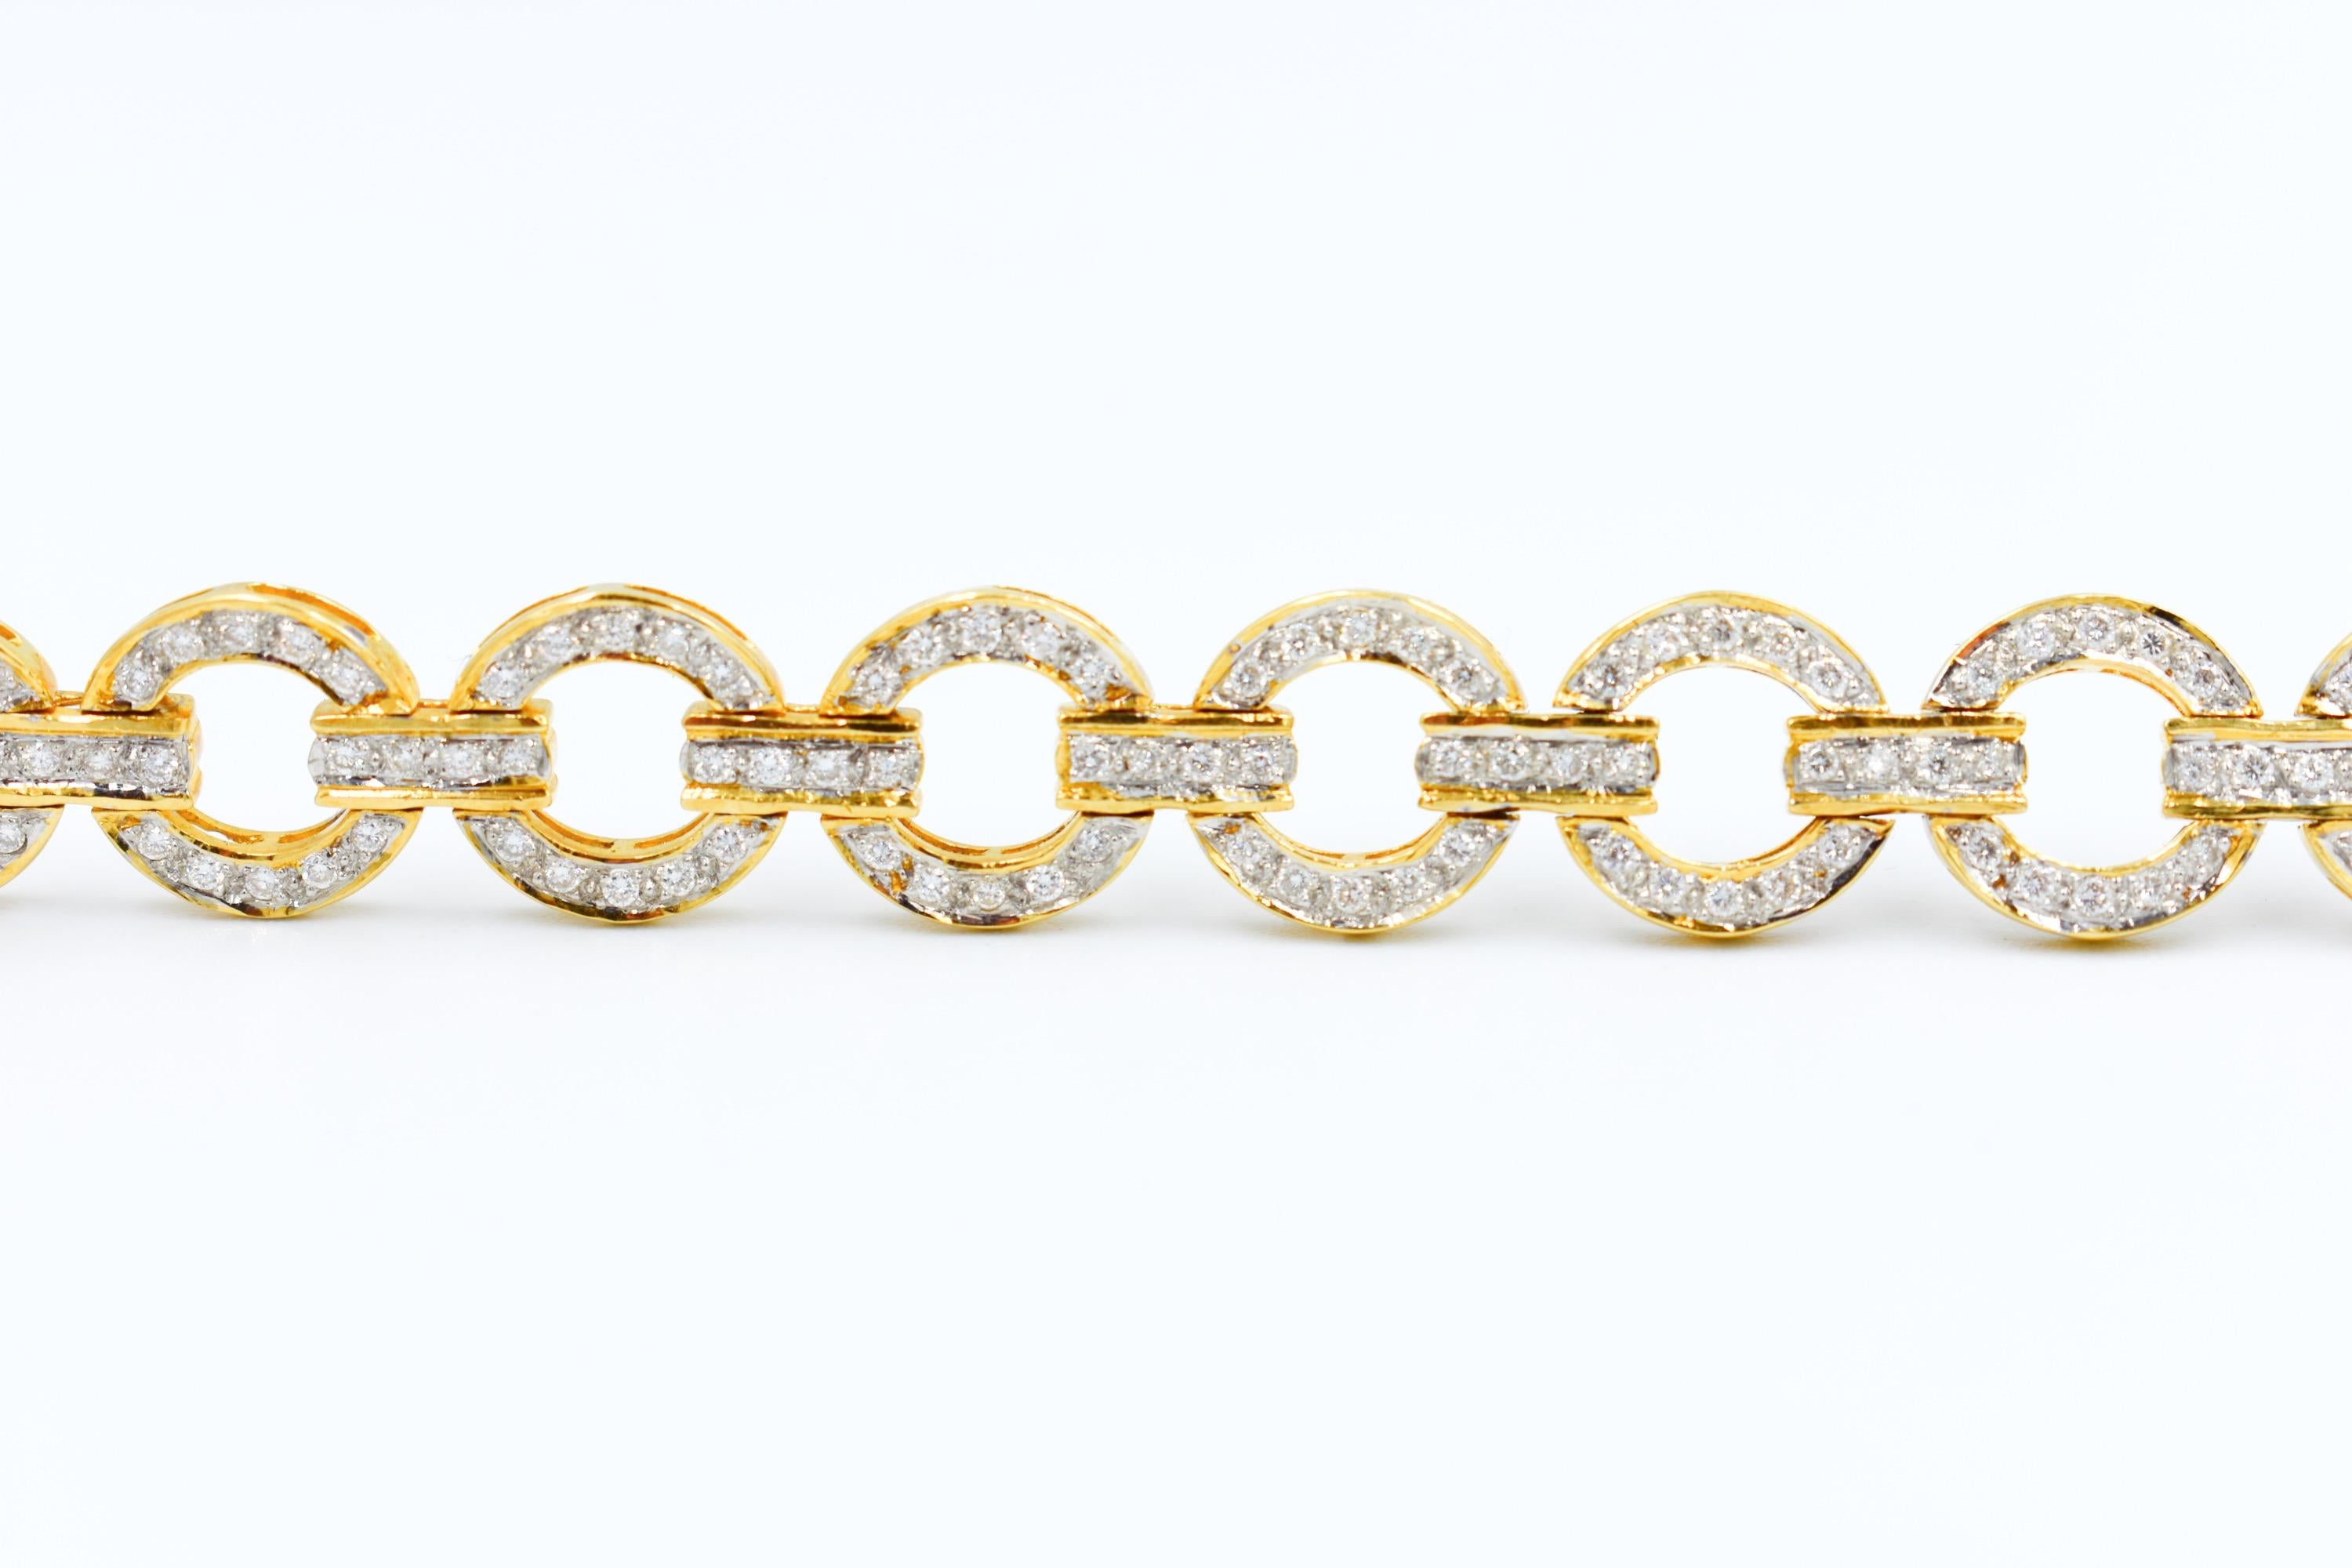 Contemporary Vintage Bracelet 18k Gold and 4 Carats Diamond Bracelet